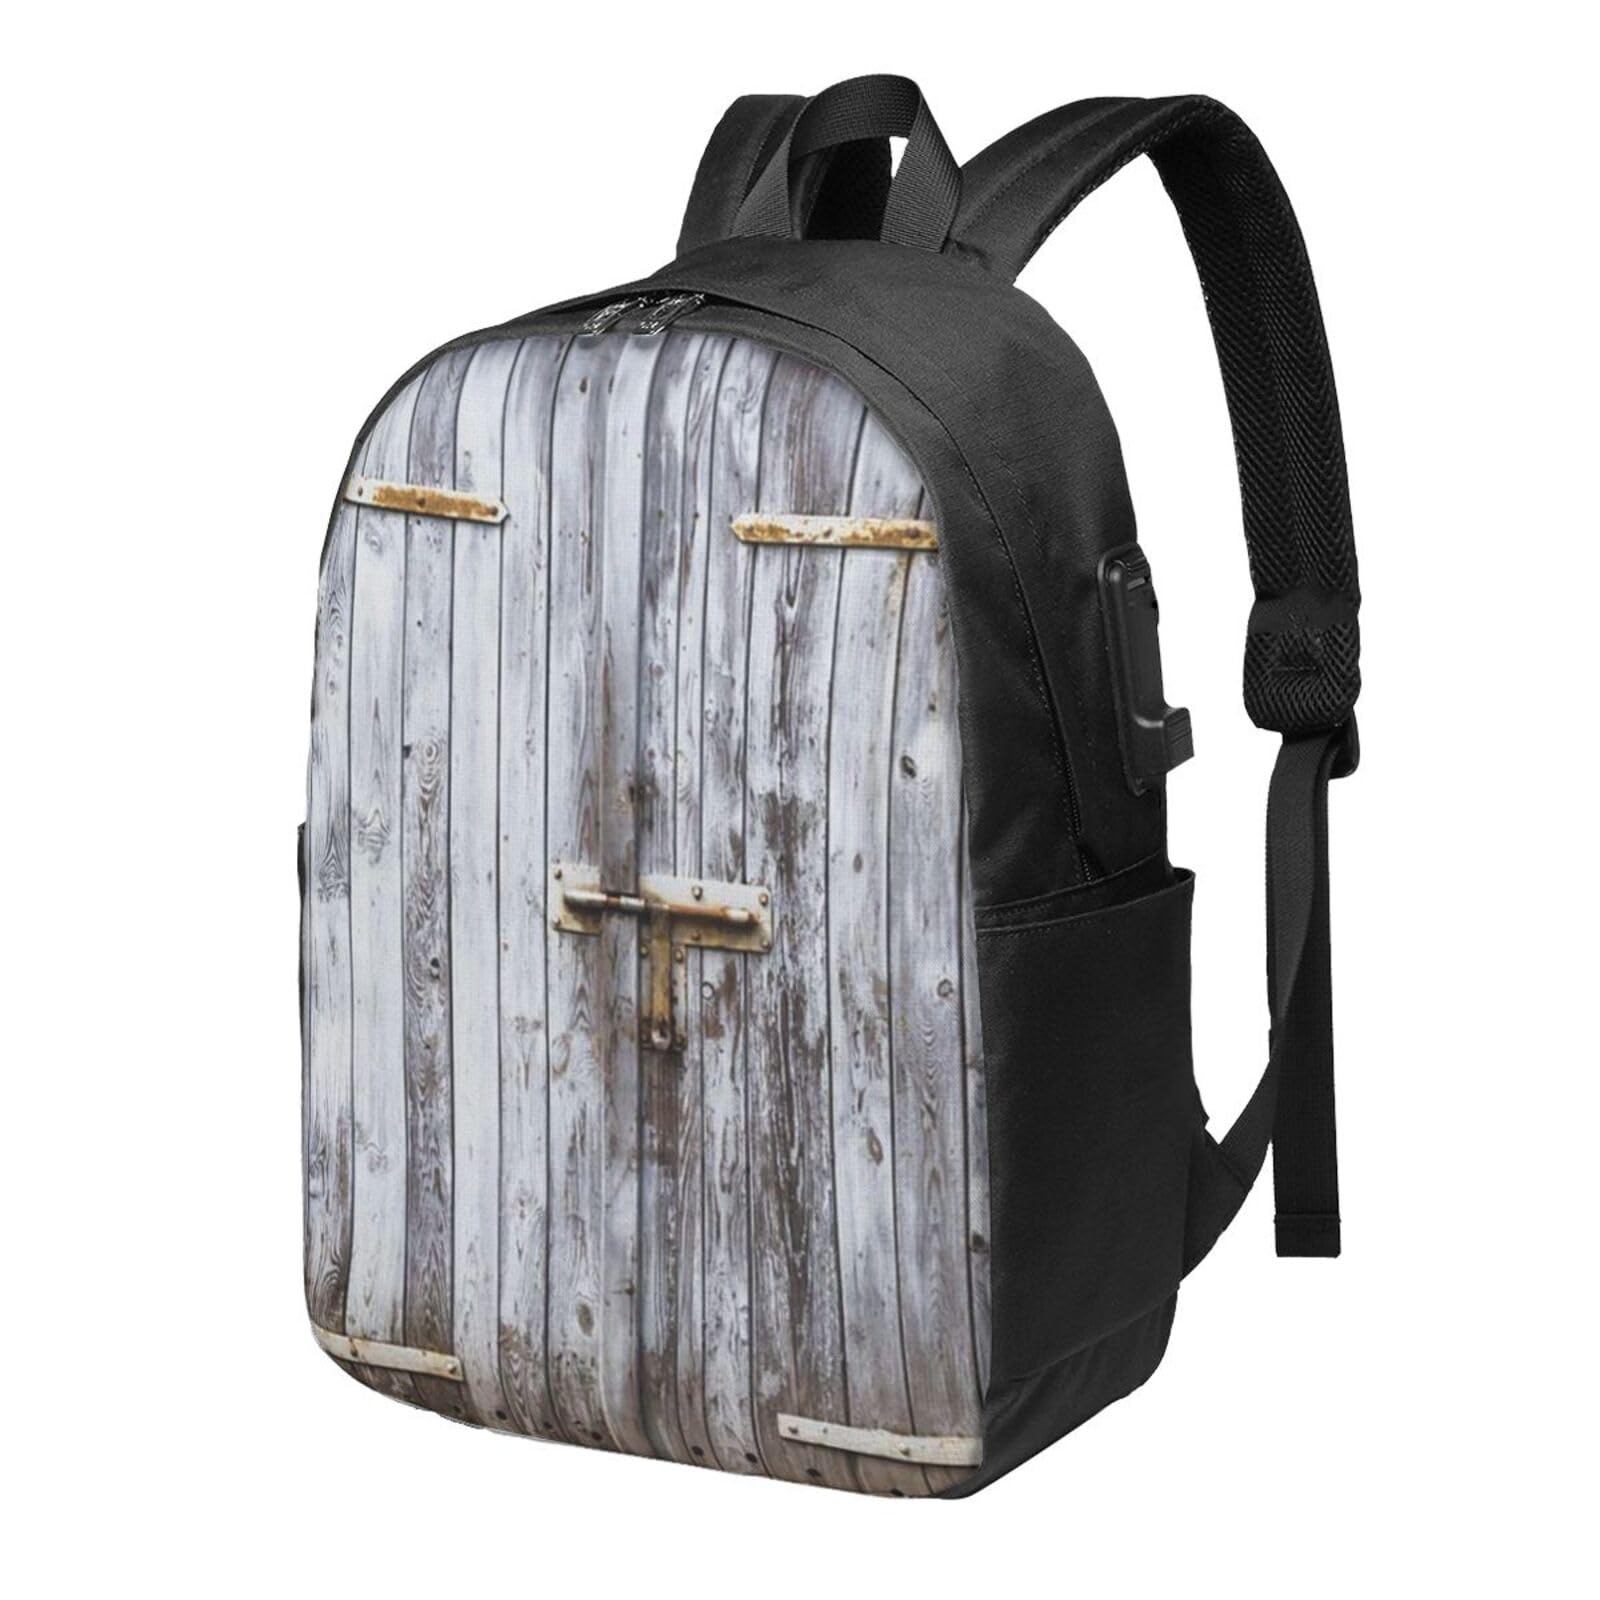 送料無料OUSIKA Old Wooden Barn Door Laptop Backpack With Usb Charging Port Water Resistant Casual Daypacks Travel Bag For